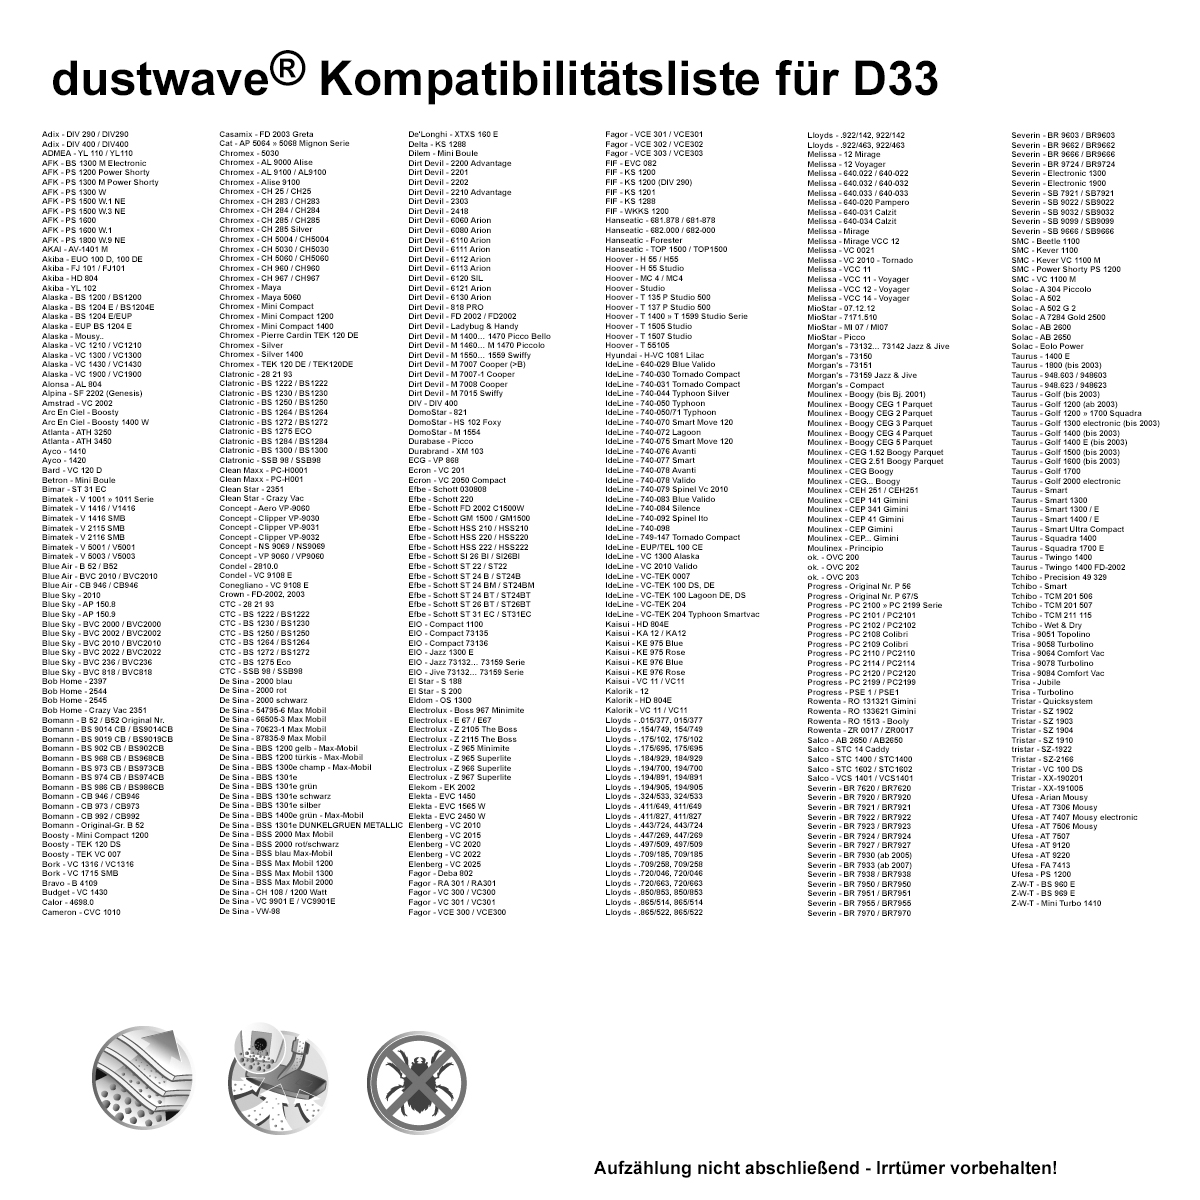 40 Staubfilterbeutel (Superpack) passend für ADMEA - YL 110 / YL110 Bodenstaubsauger - dustwave® Markenstaubbeutel - Made in Germany + inkl. Micro-Filter